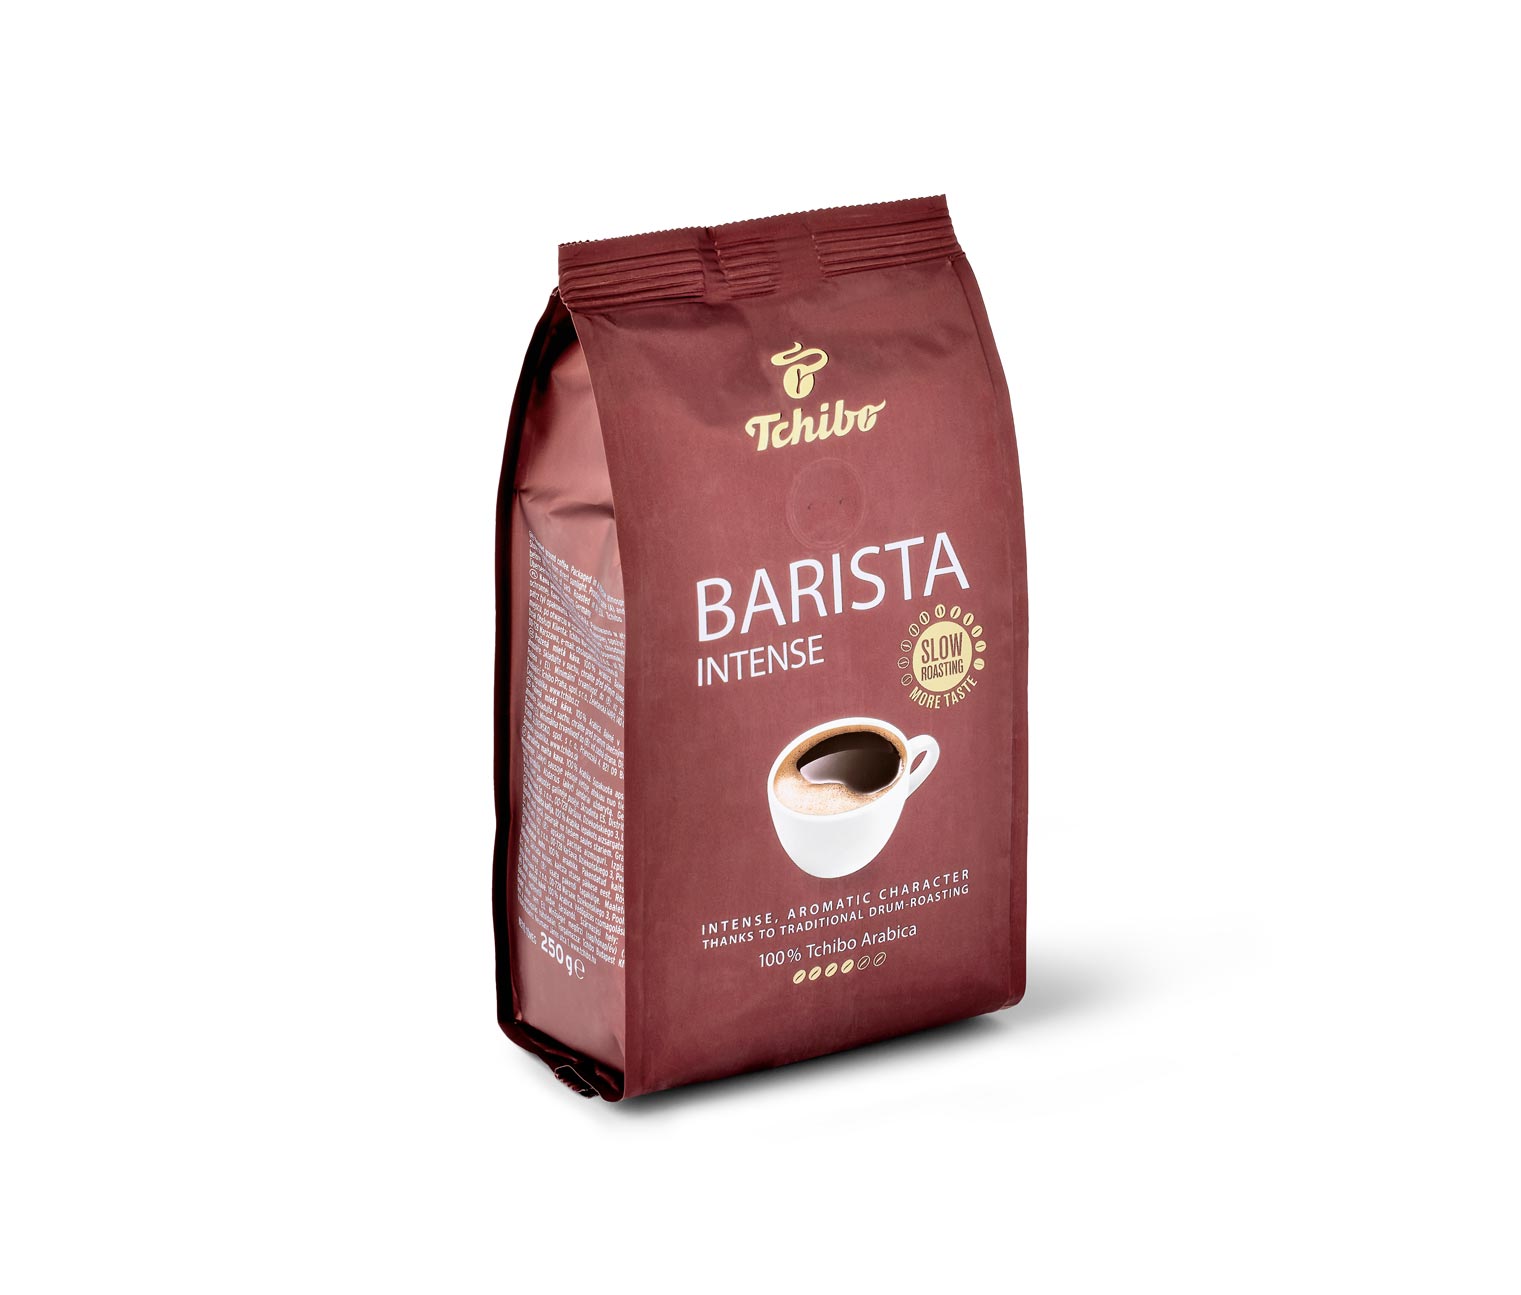 Tchibo Barista Intense - pražená mletá káva online bestellen bei Tchibo  519920